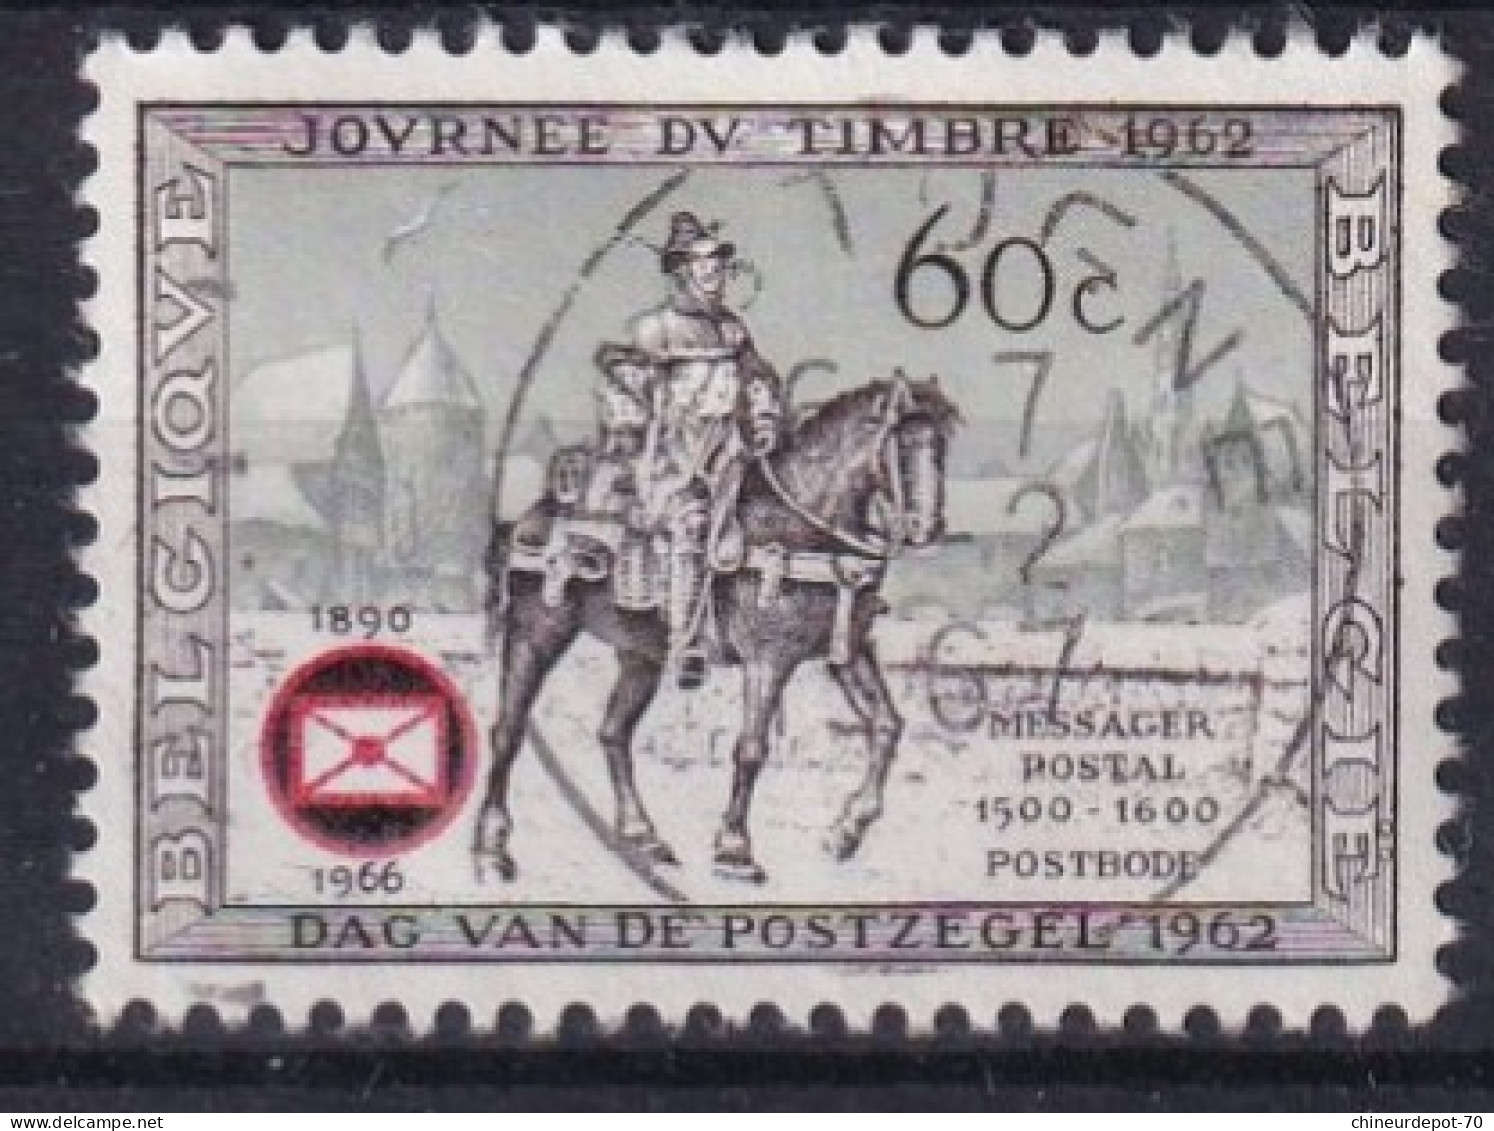 journée du timbre 1962 Bruxelles Soignies Antwerpen Temploux Virton bastogne Statte Huy Elsenborn